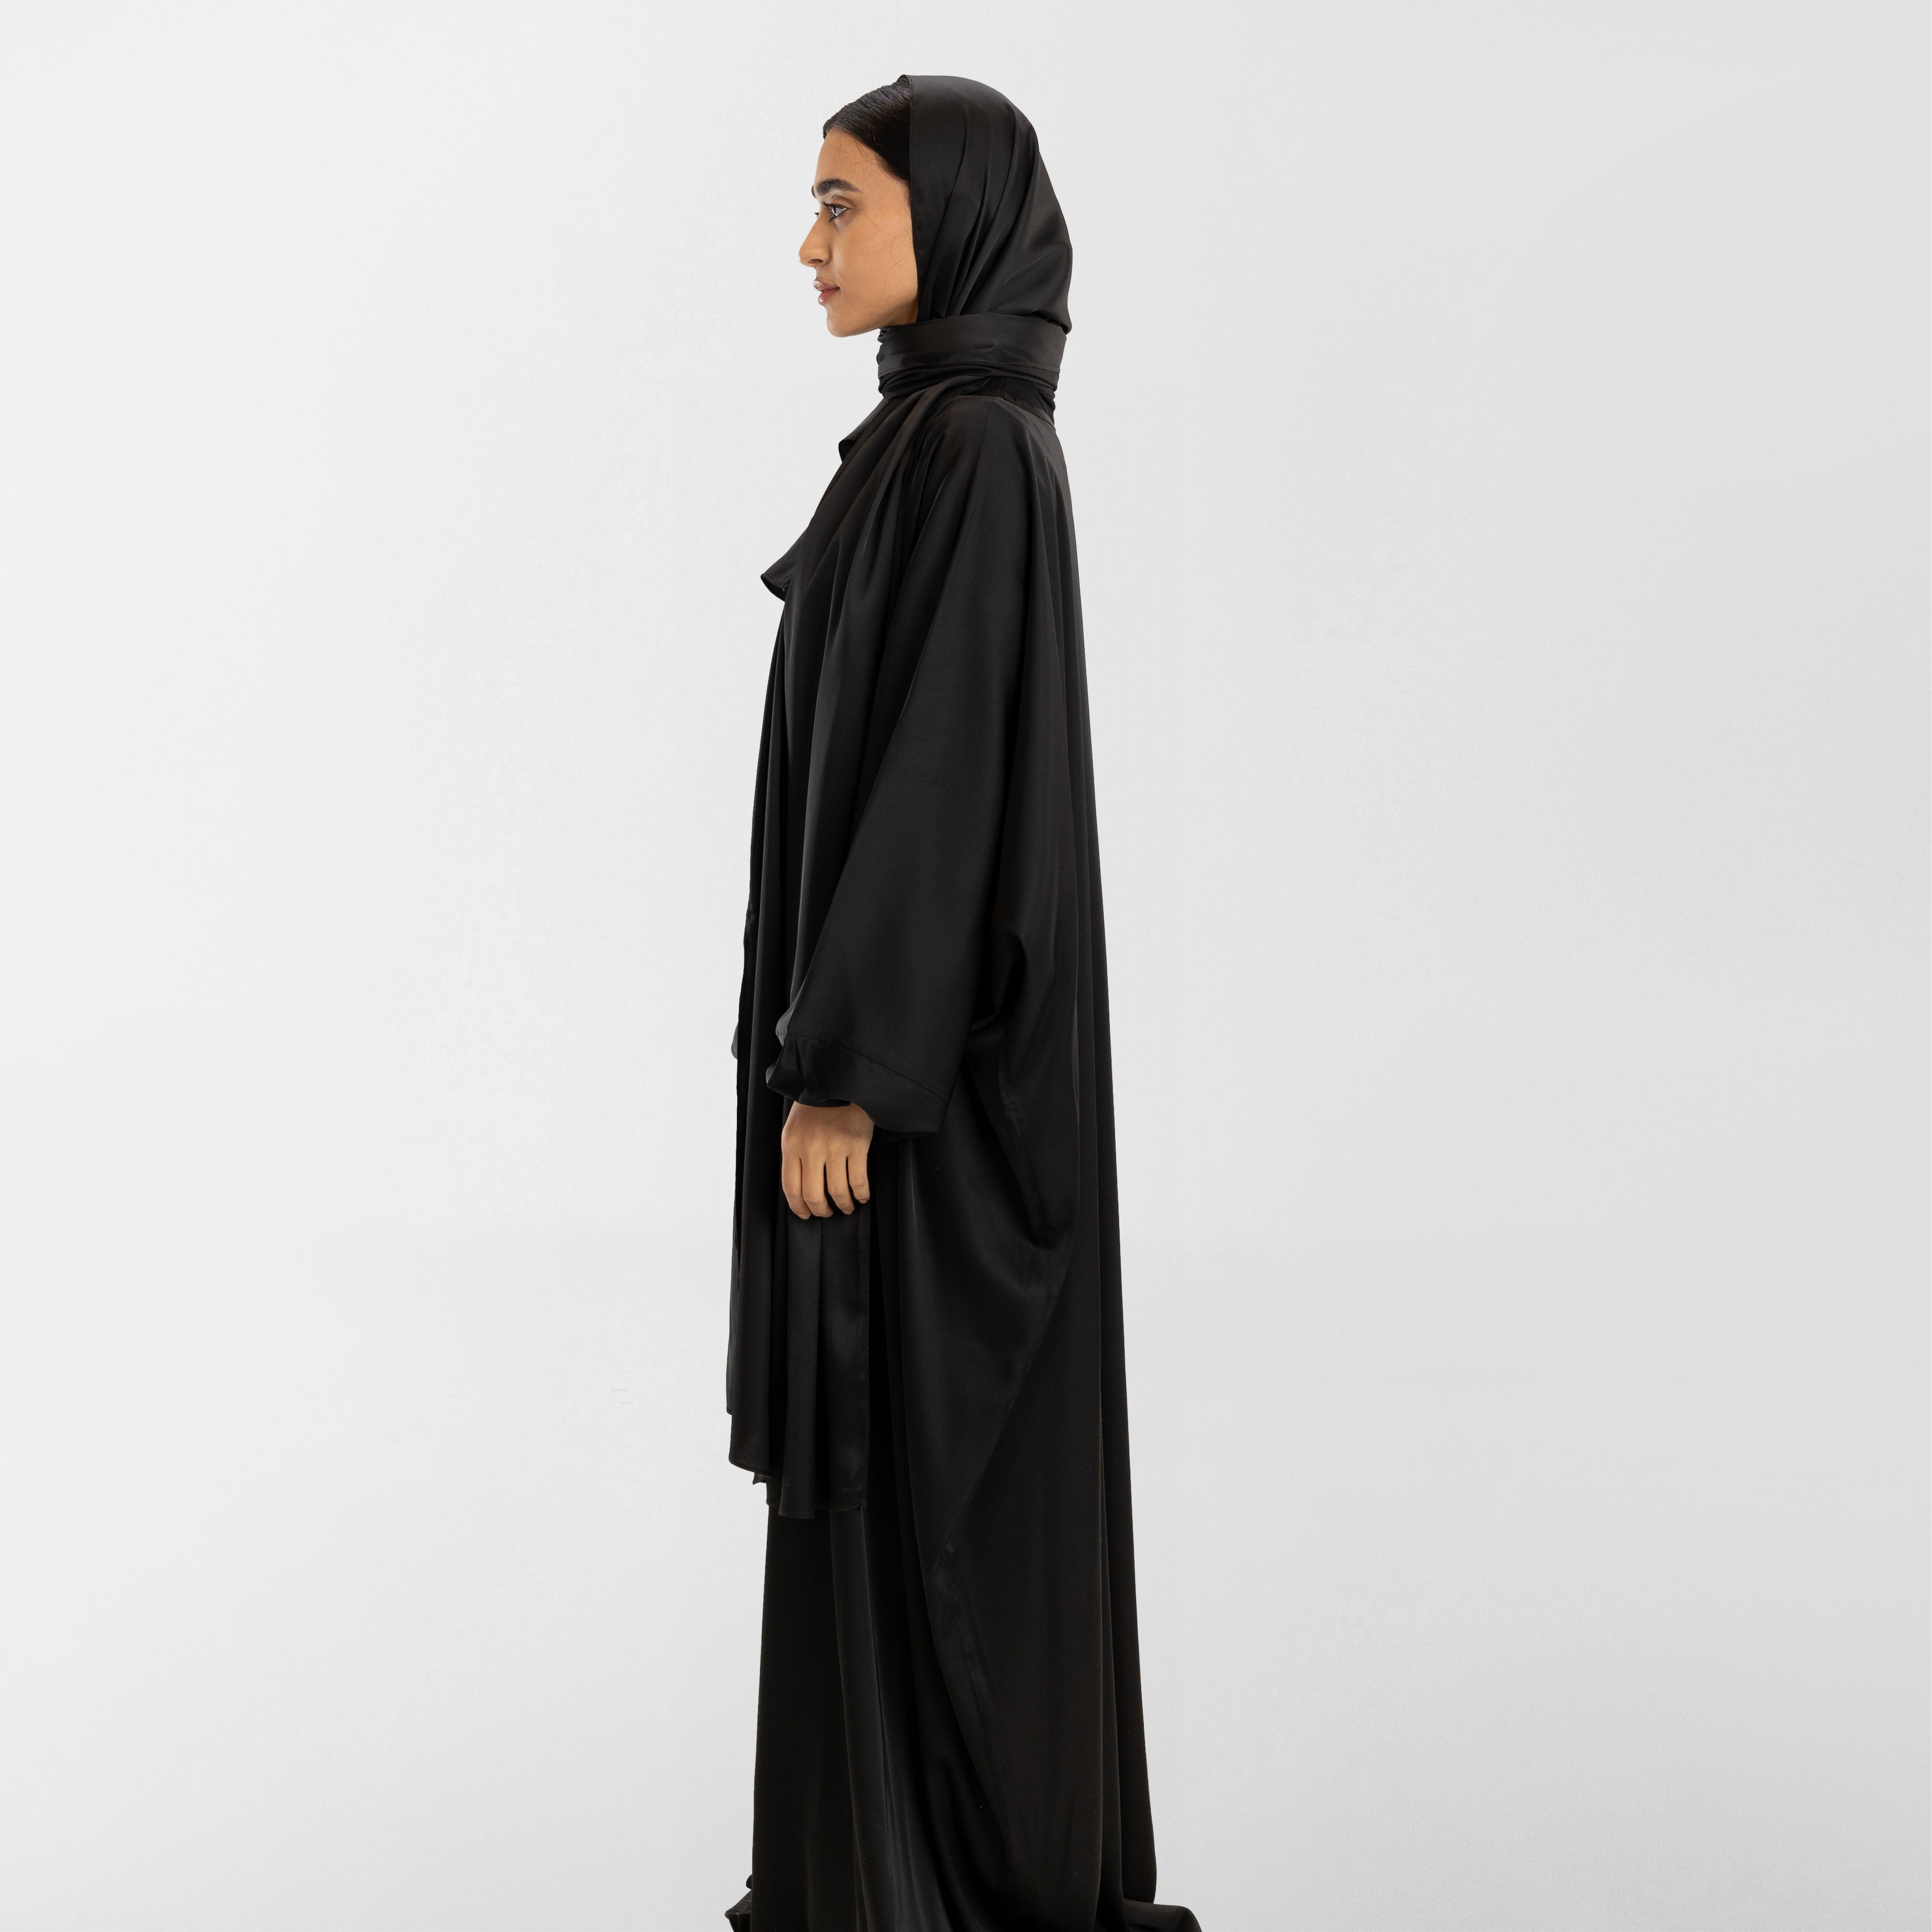 Prayer Wear - Isdal FULL BLACK